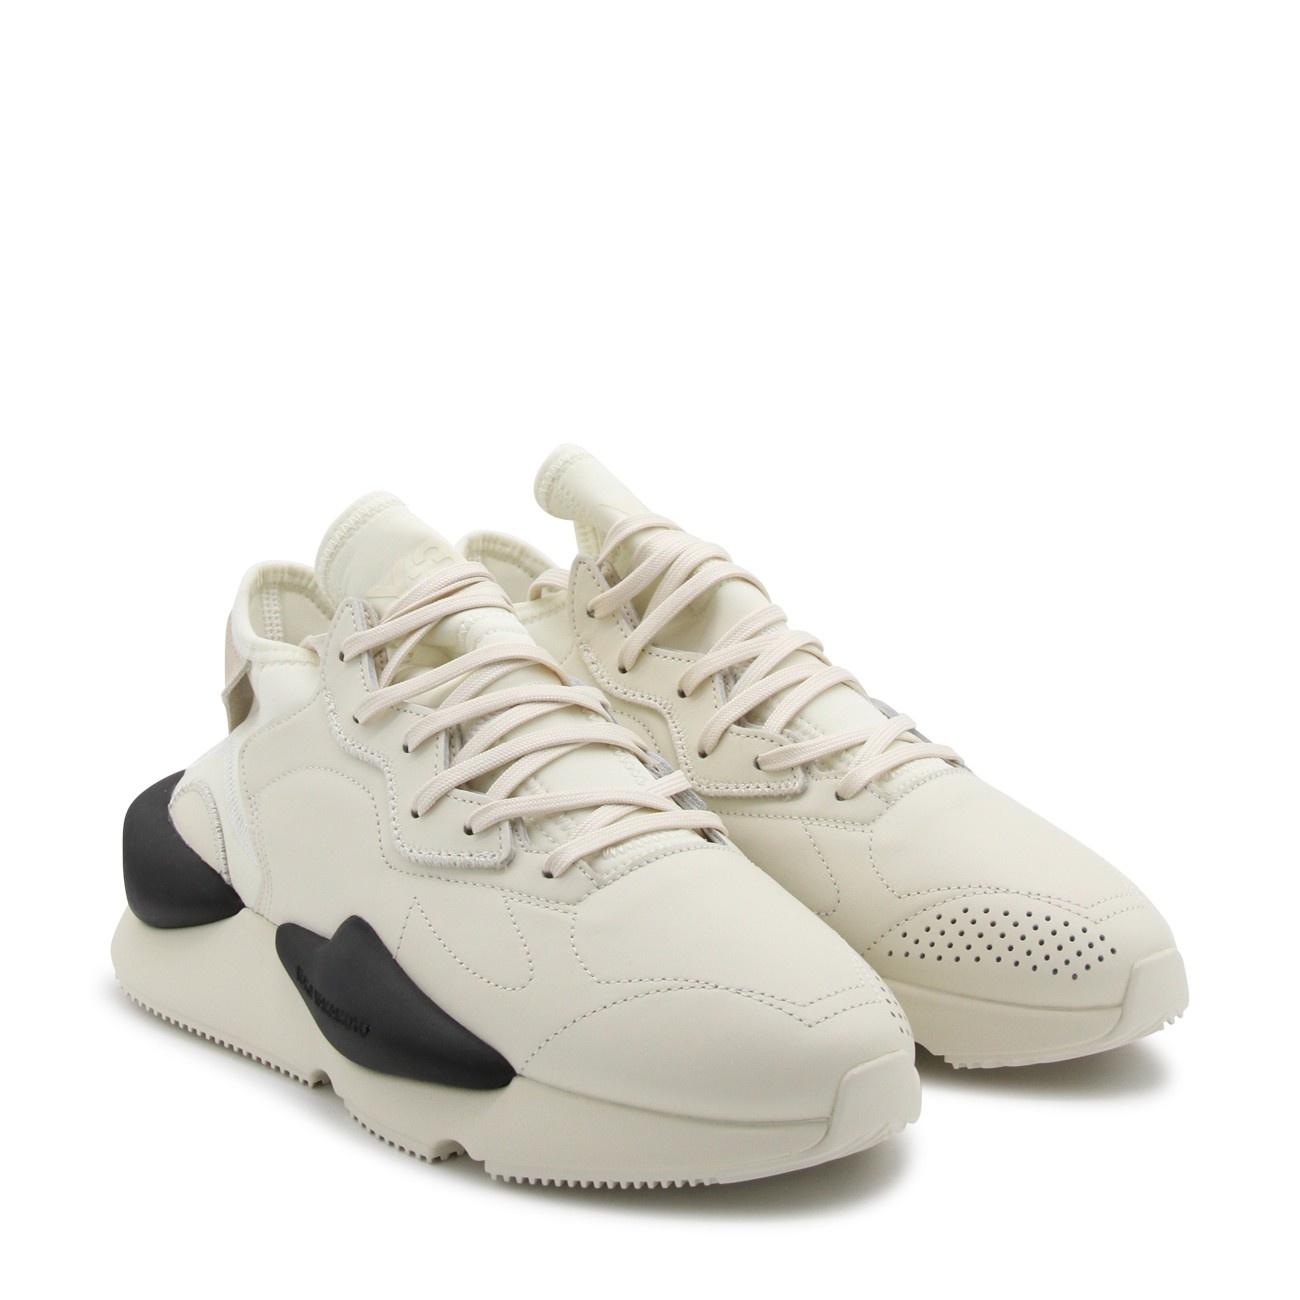 white leather kaiwa sneakers - 2